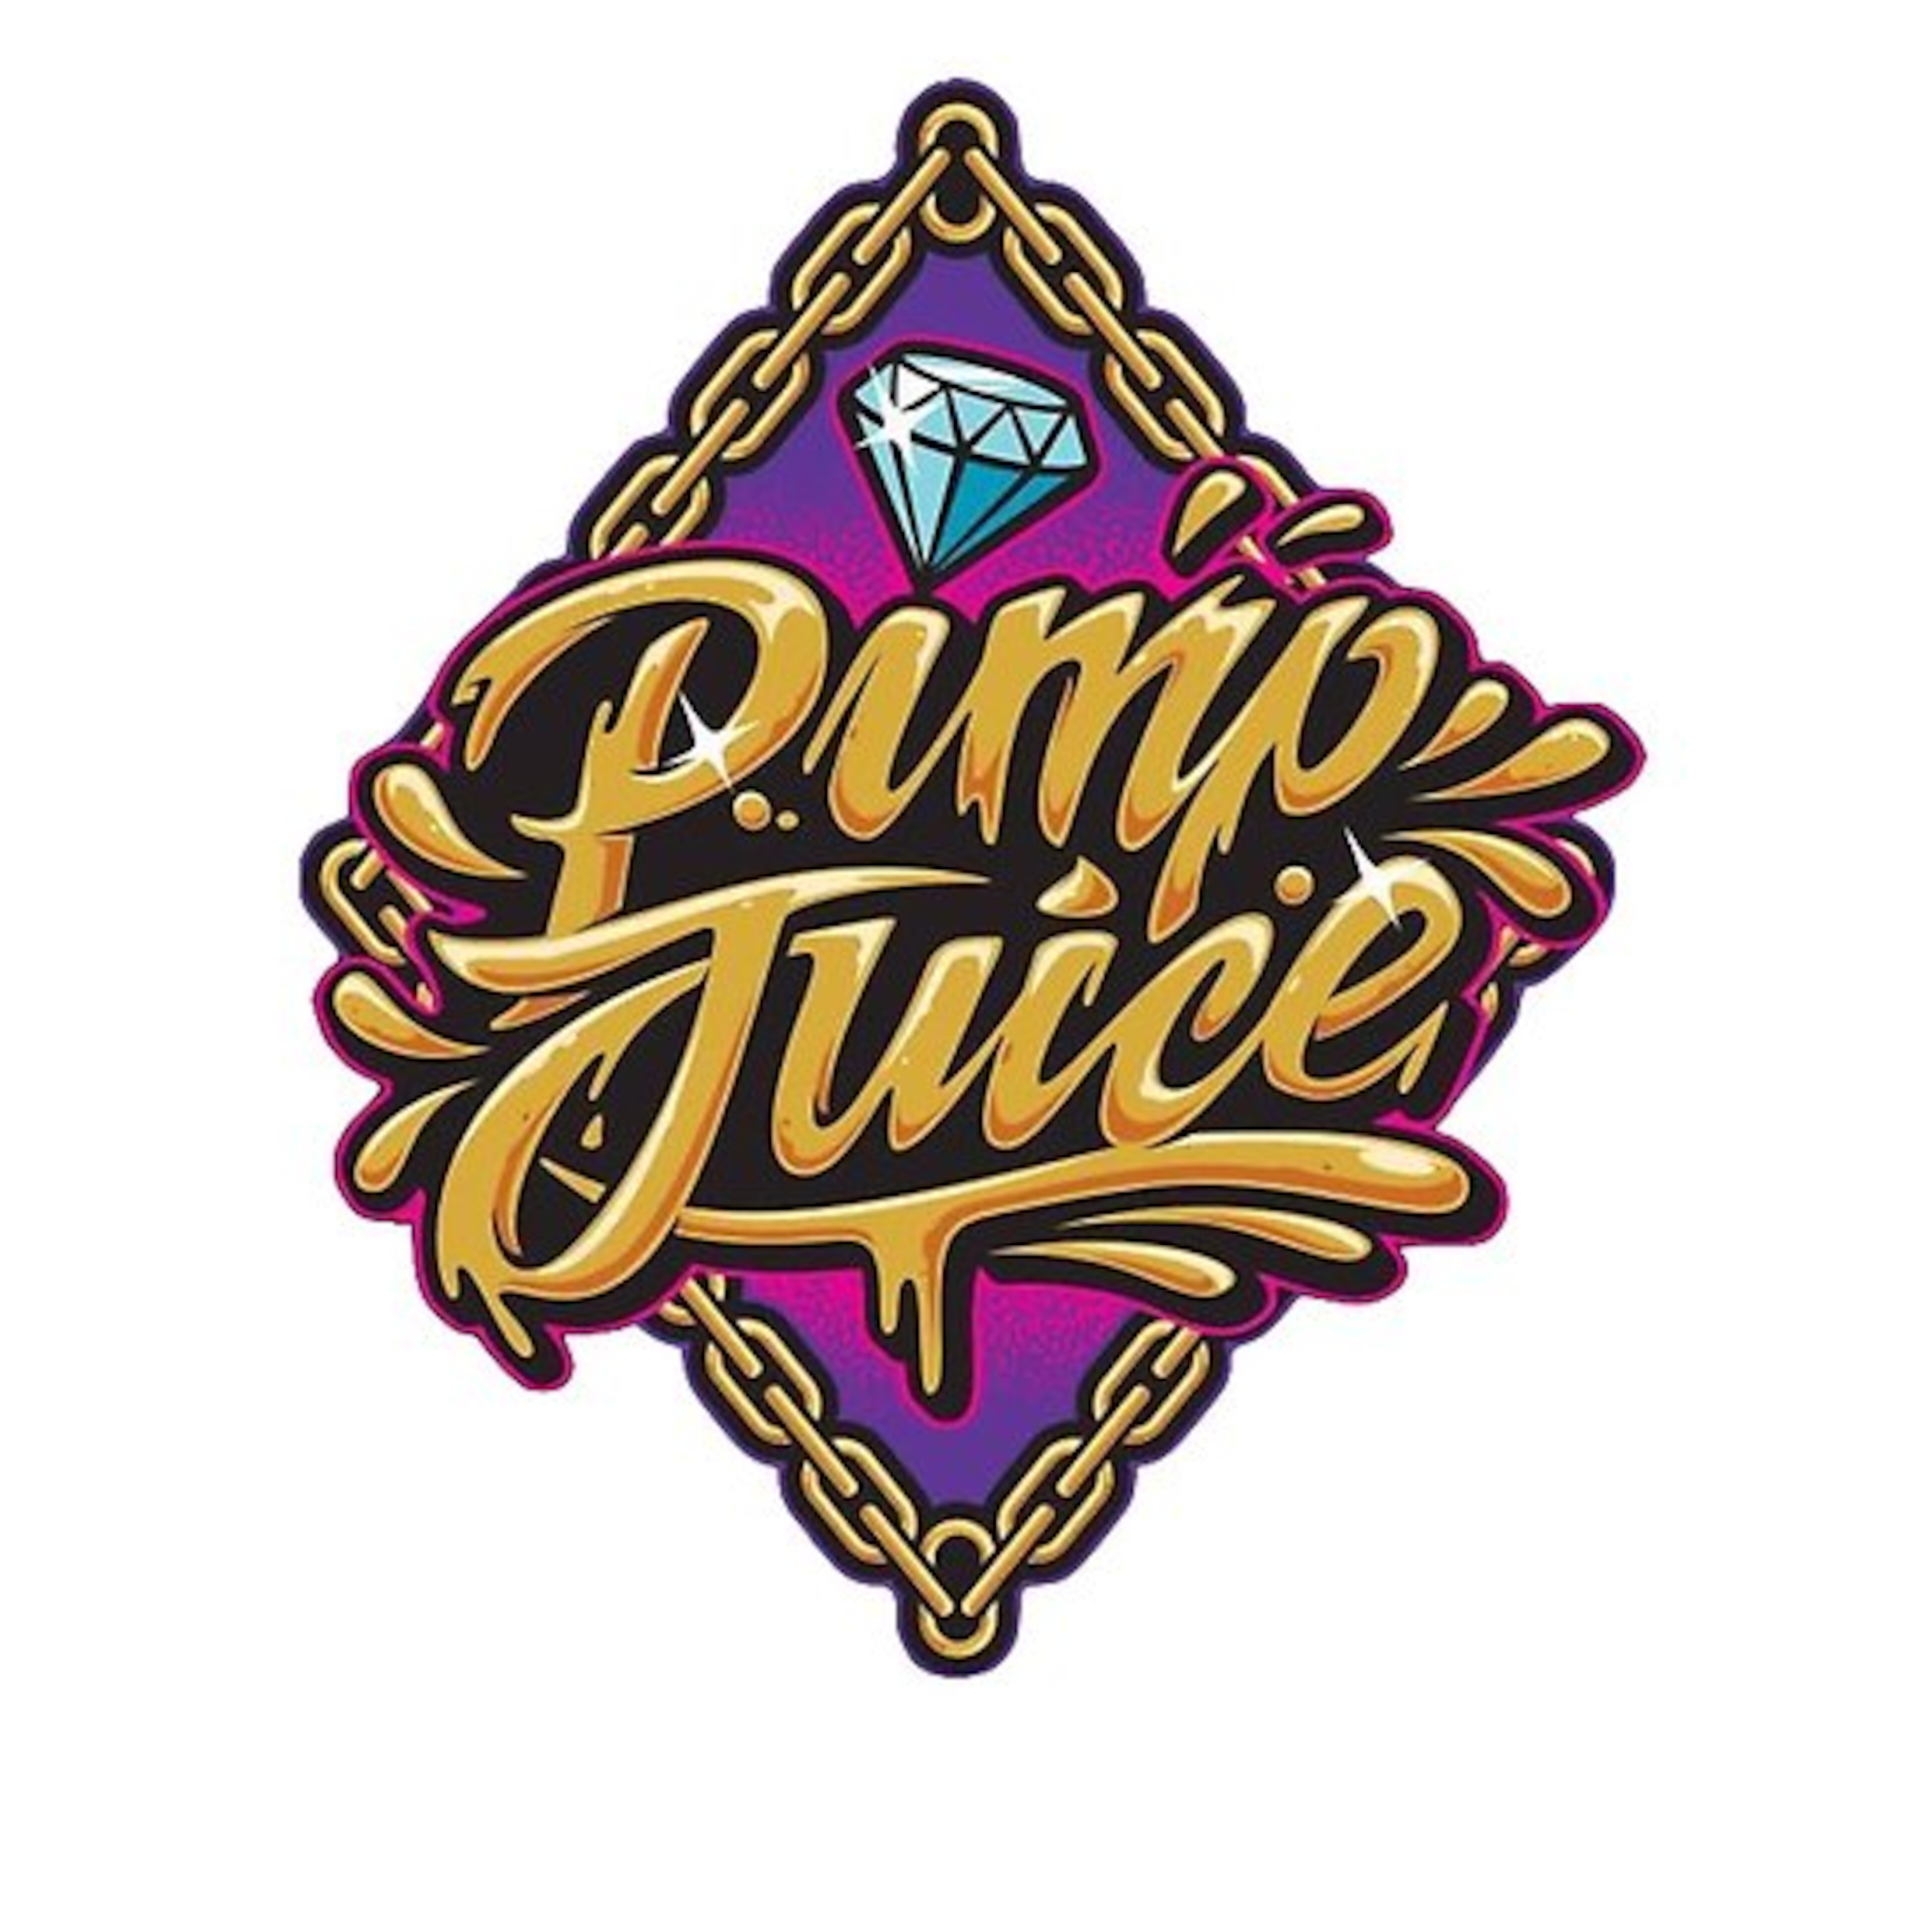 Pimp juice meaning